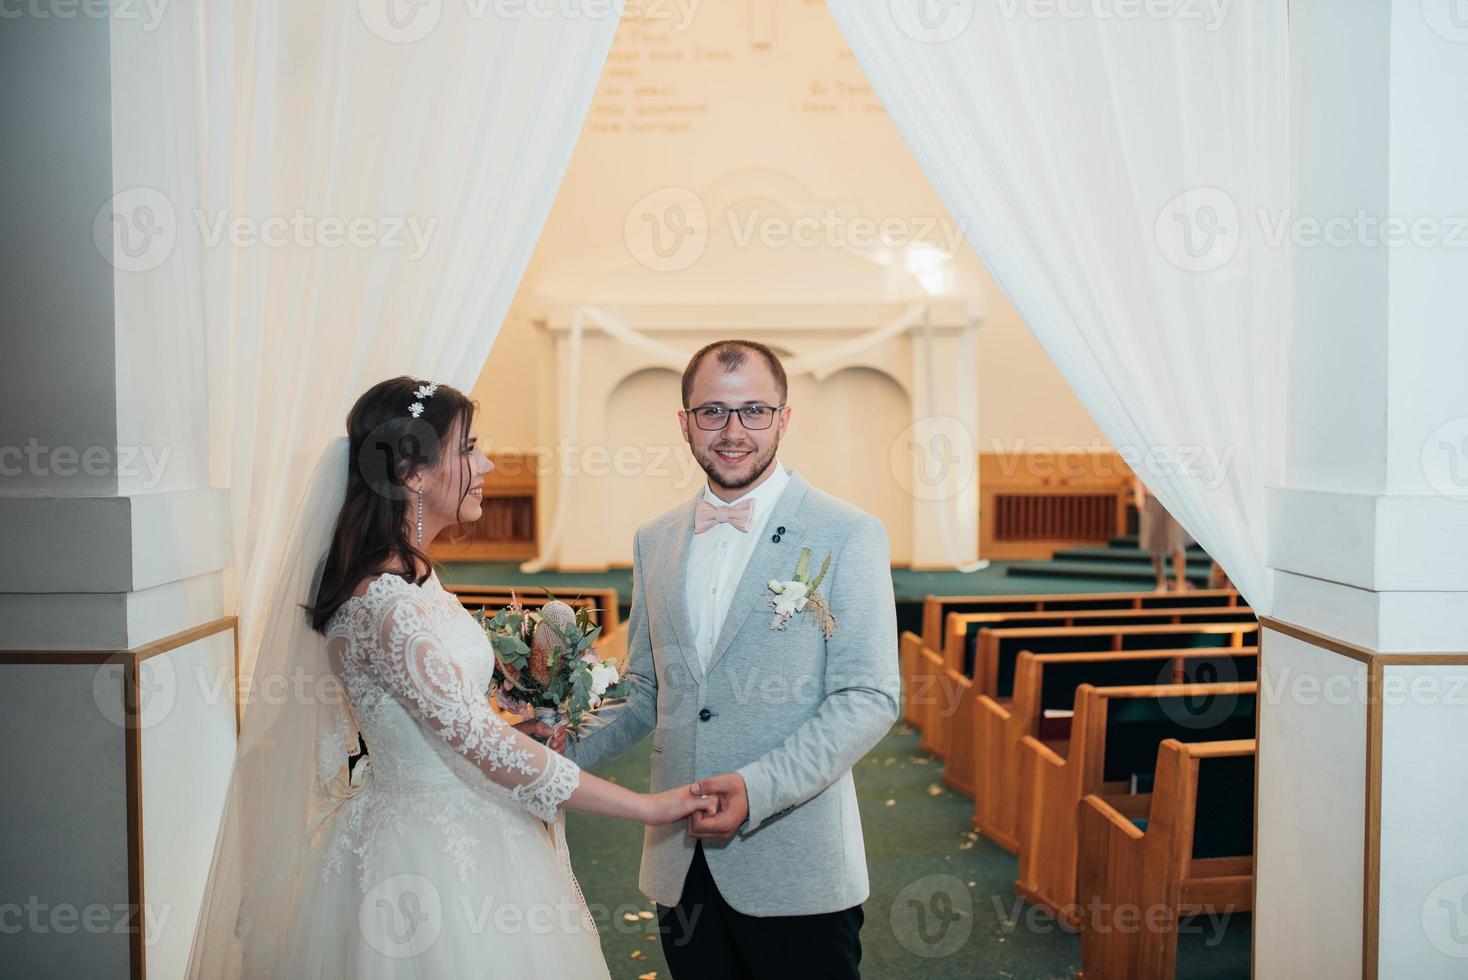 jovem noiva e noivo no dia do casamento em uma igreja foto